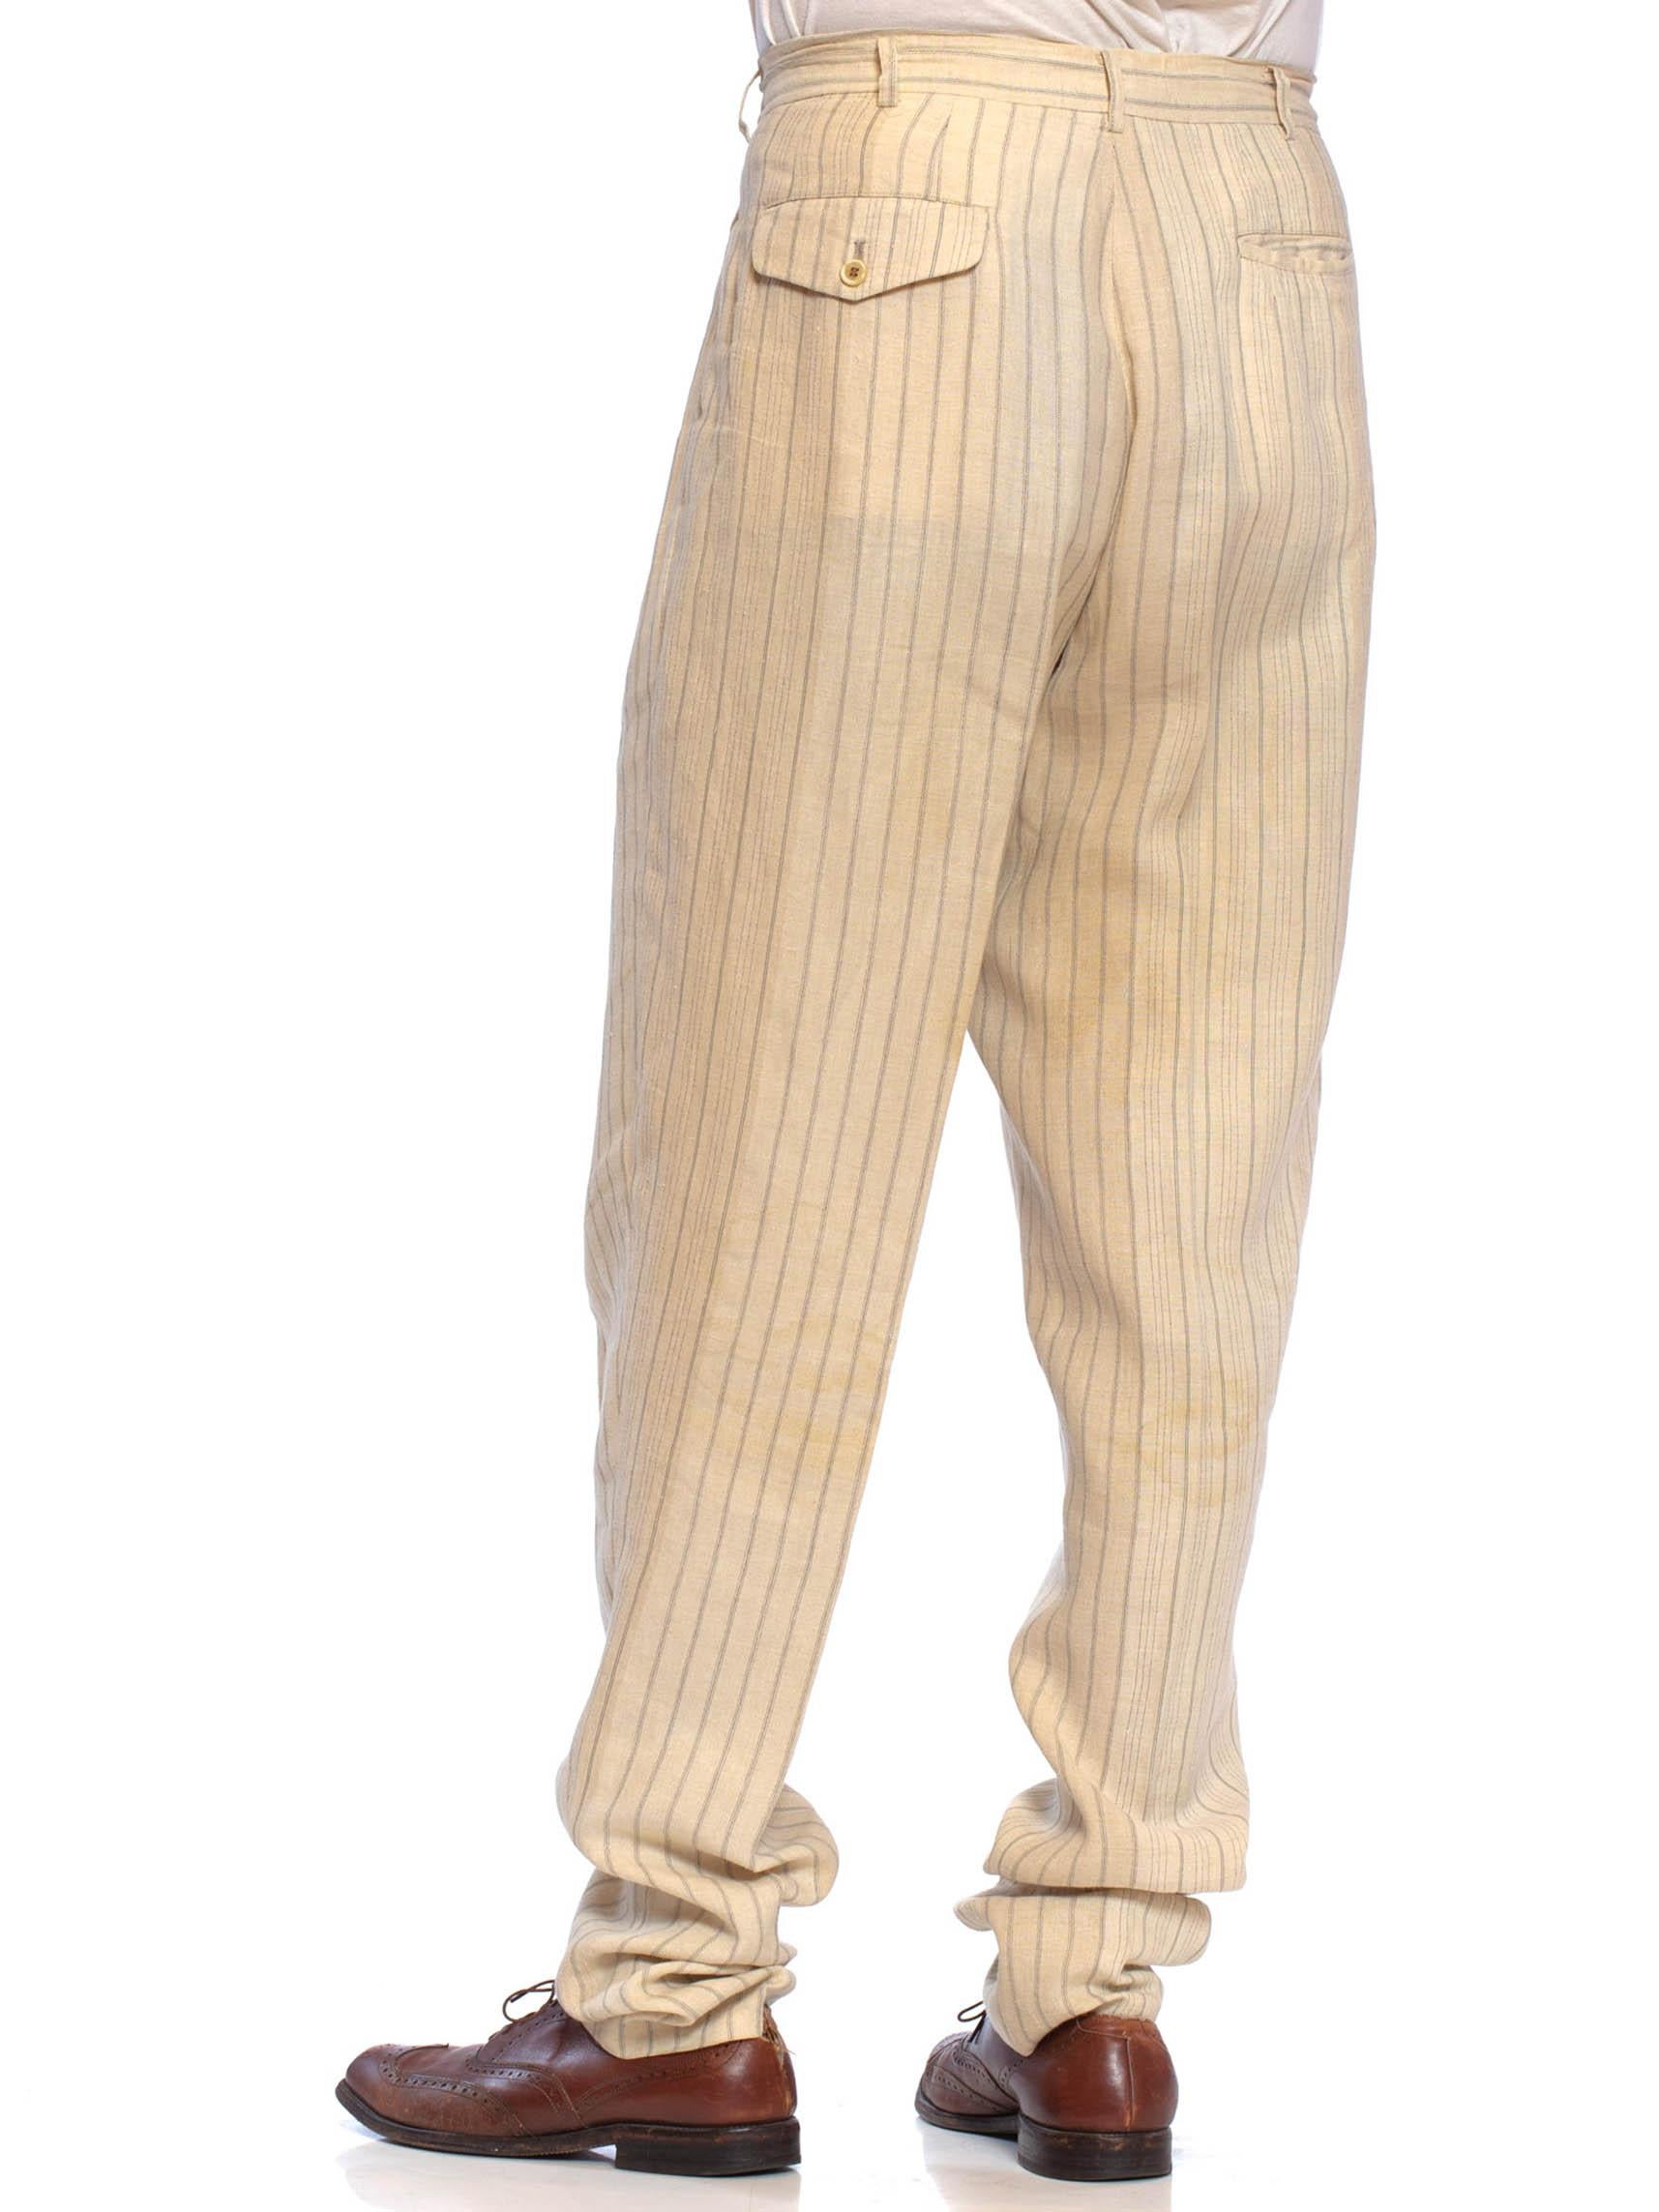 cOMME DES GARCONS 1980S - Pantalon pour homme en lin rayé crème, froncé à l'ourlet